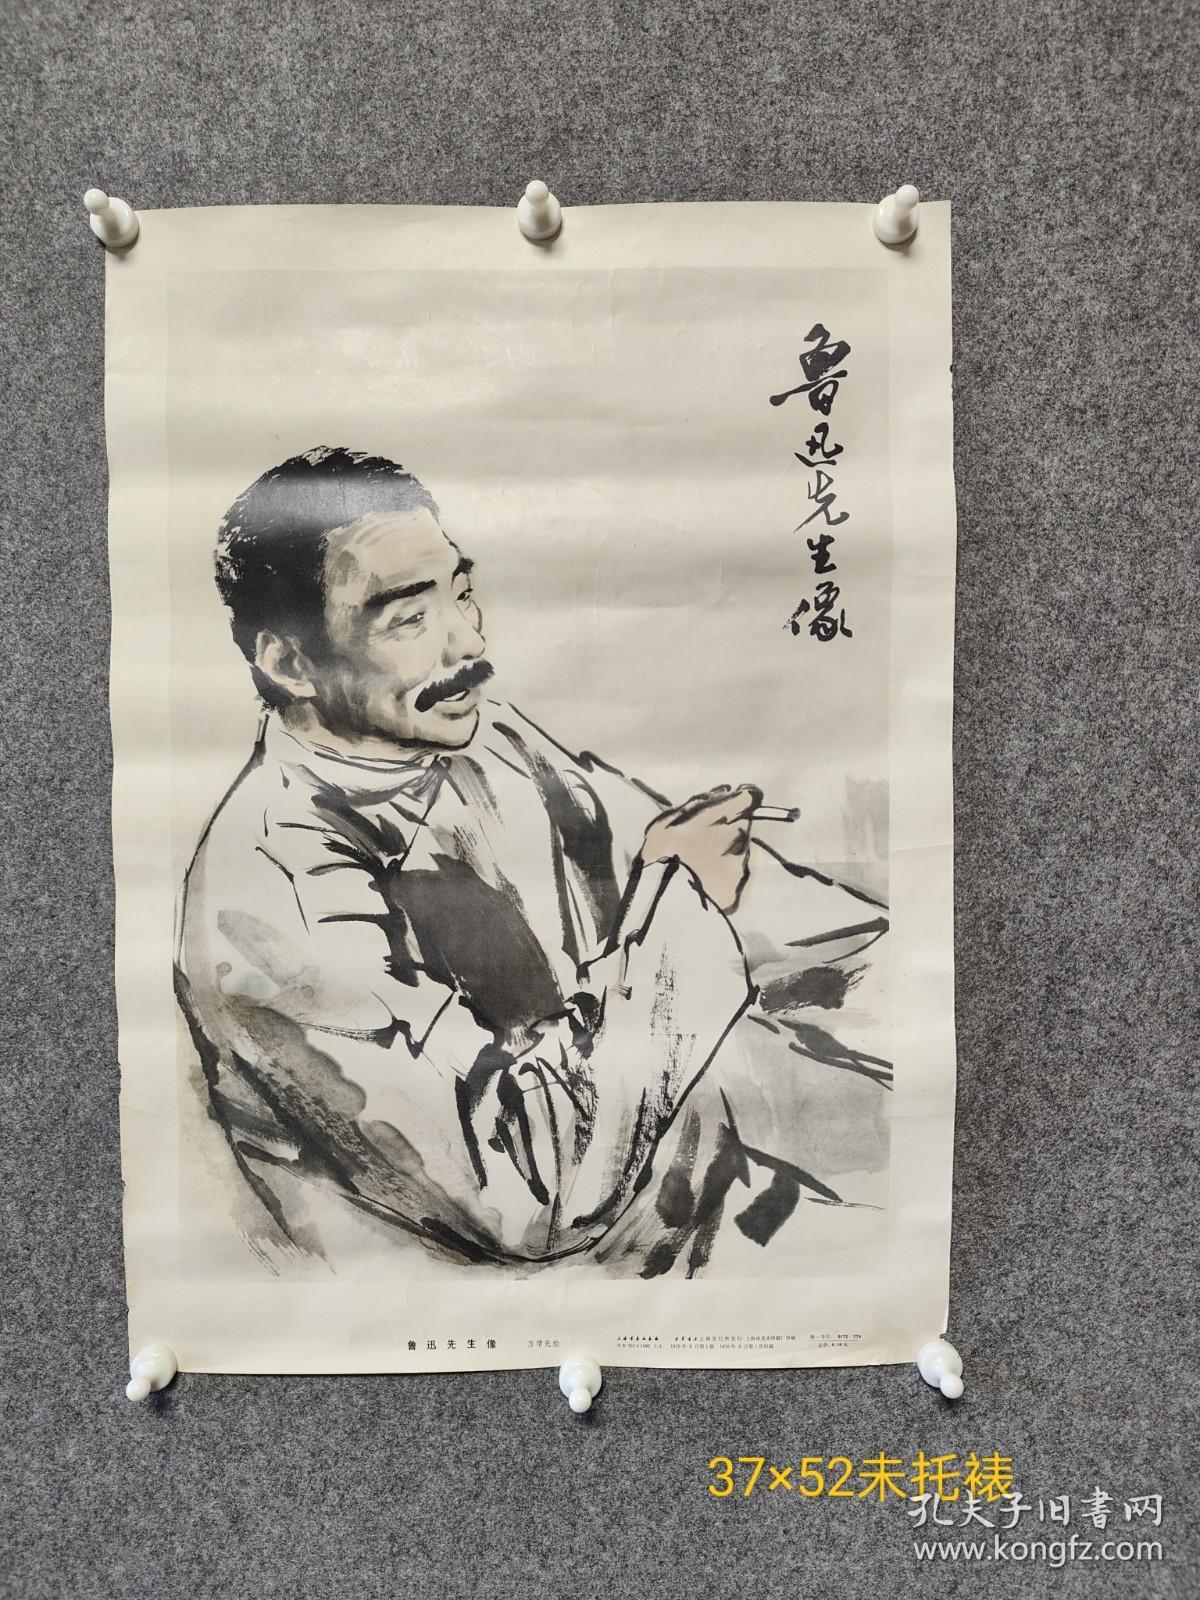 1976年月、上海市美术印刷厂印刷、方增先绘、鲁迅先生像